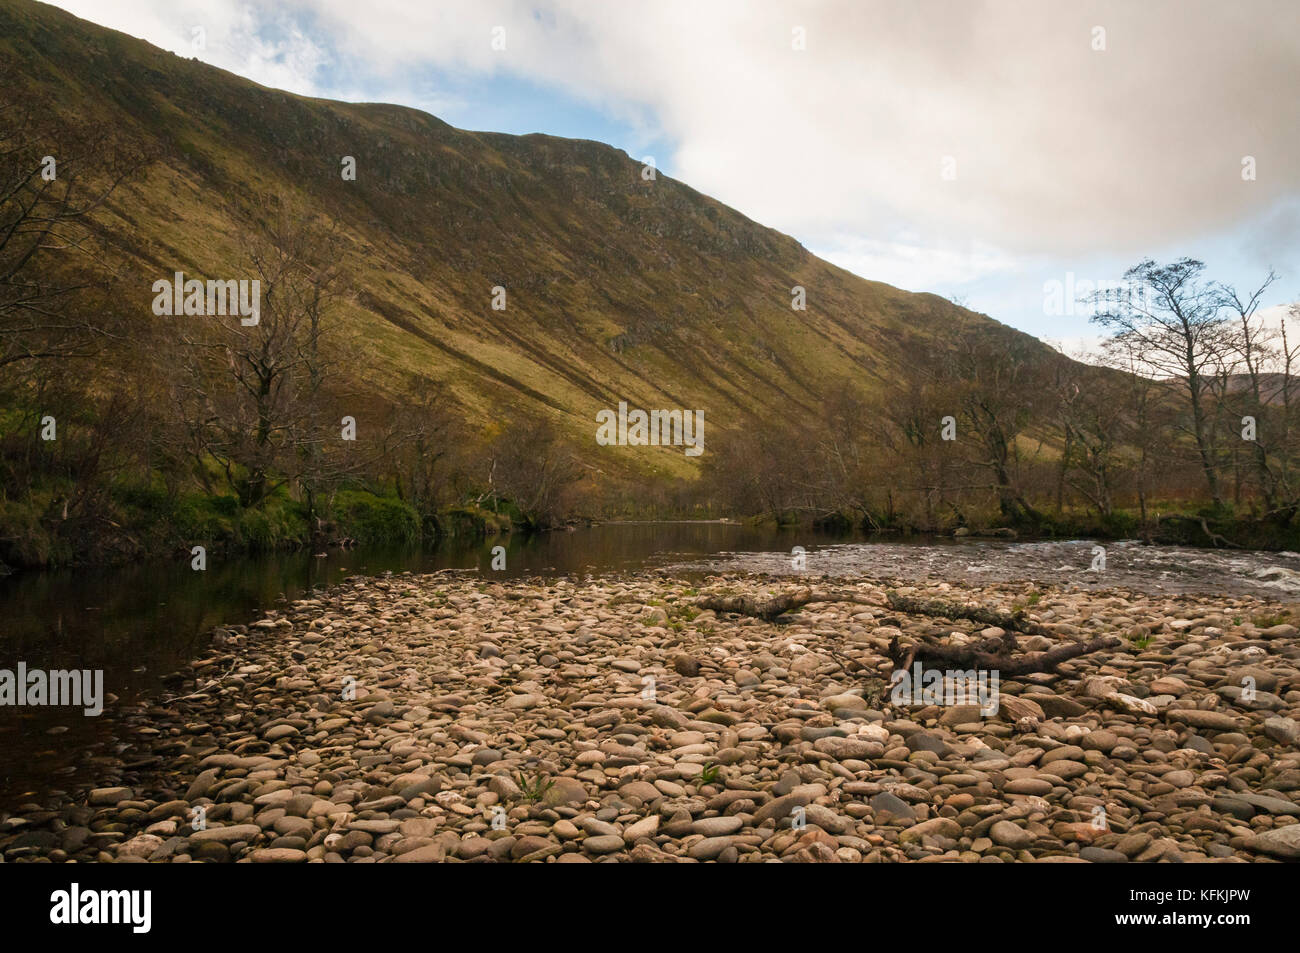 La rivière en amande des sma glen, Perth and Kinross, en Écosse Banque D'Images